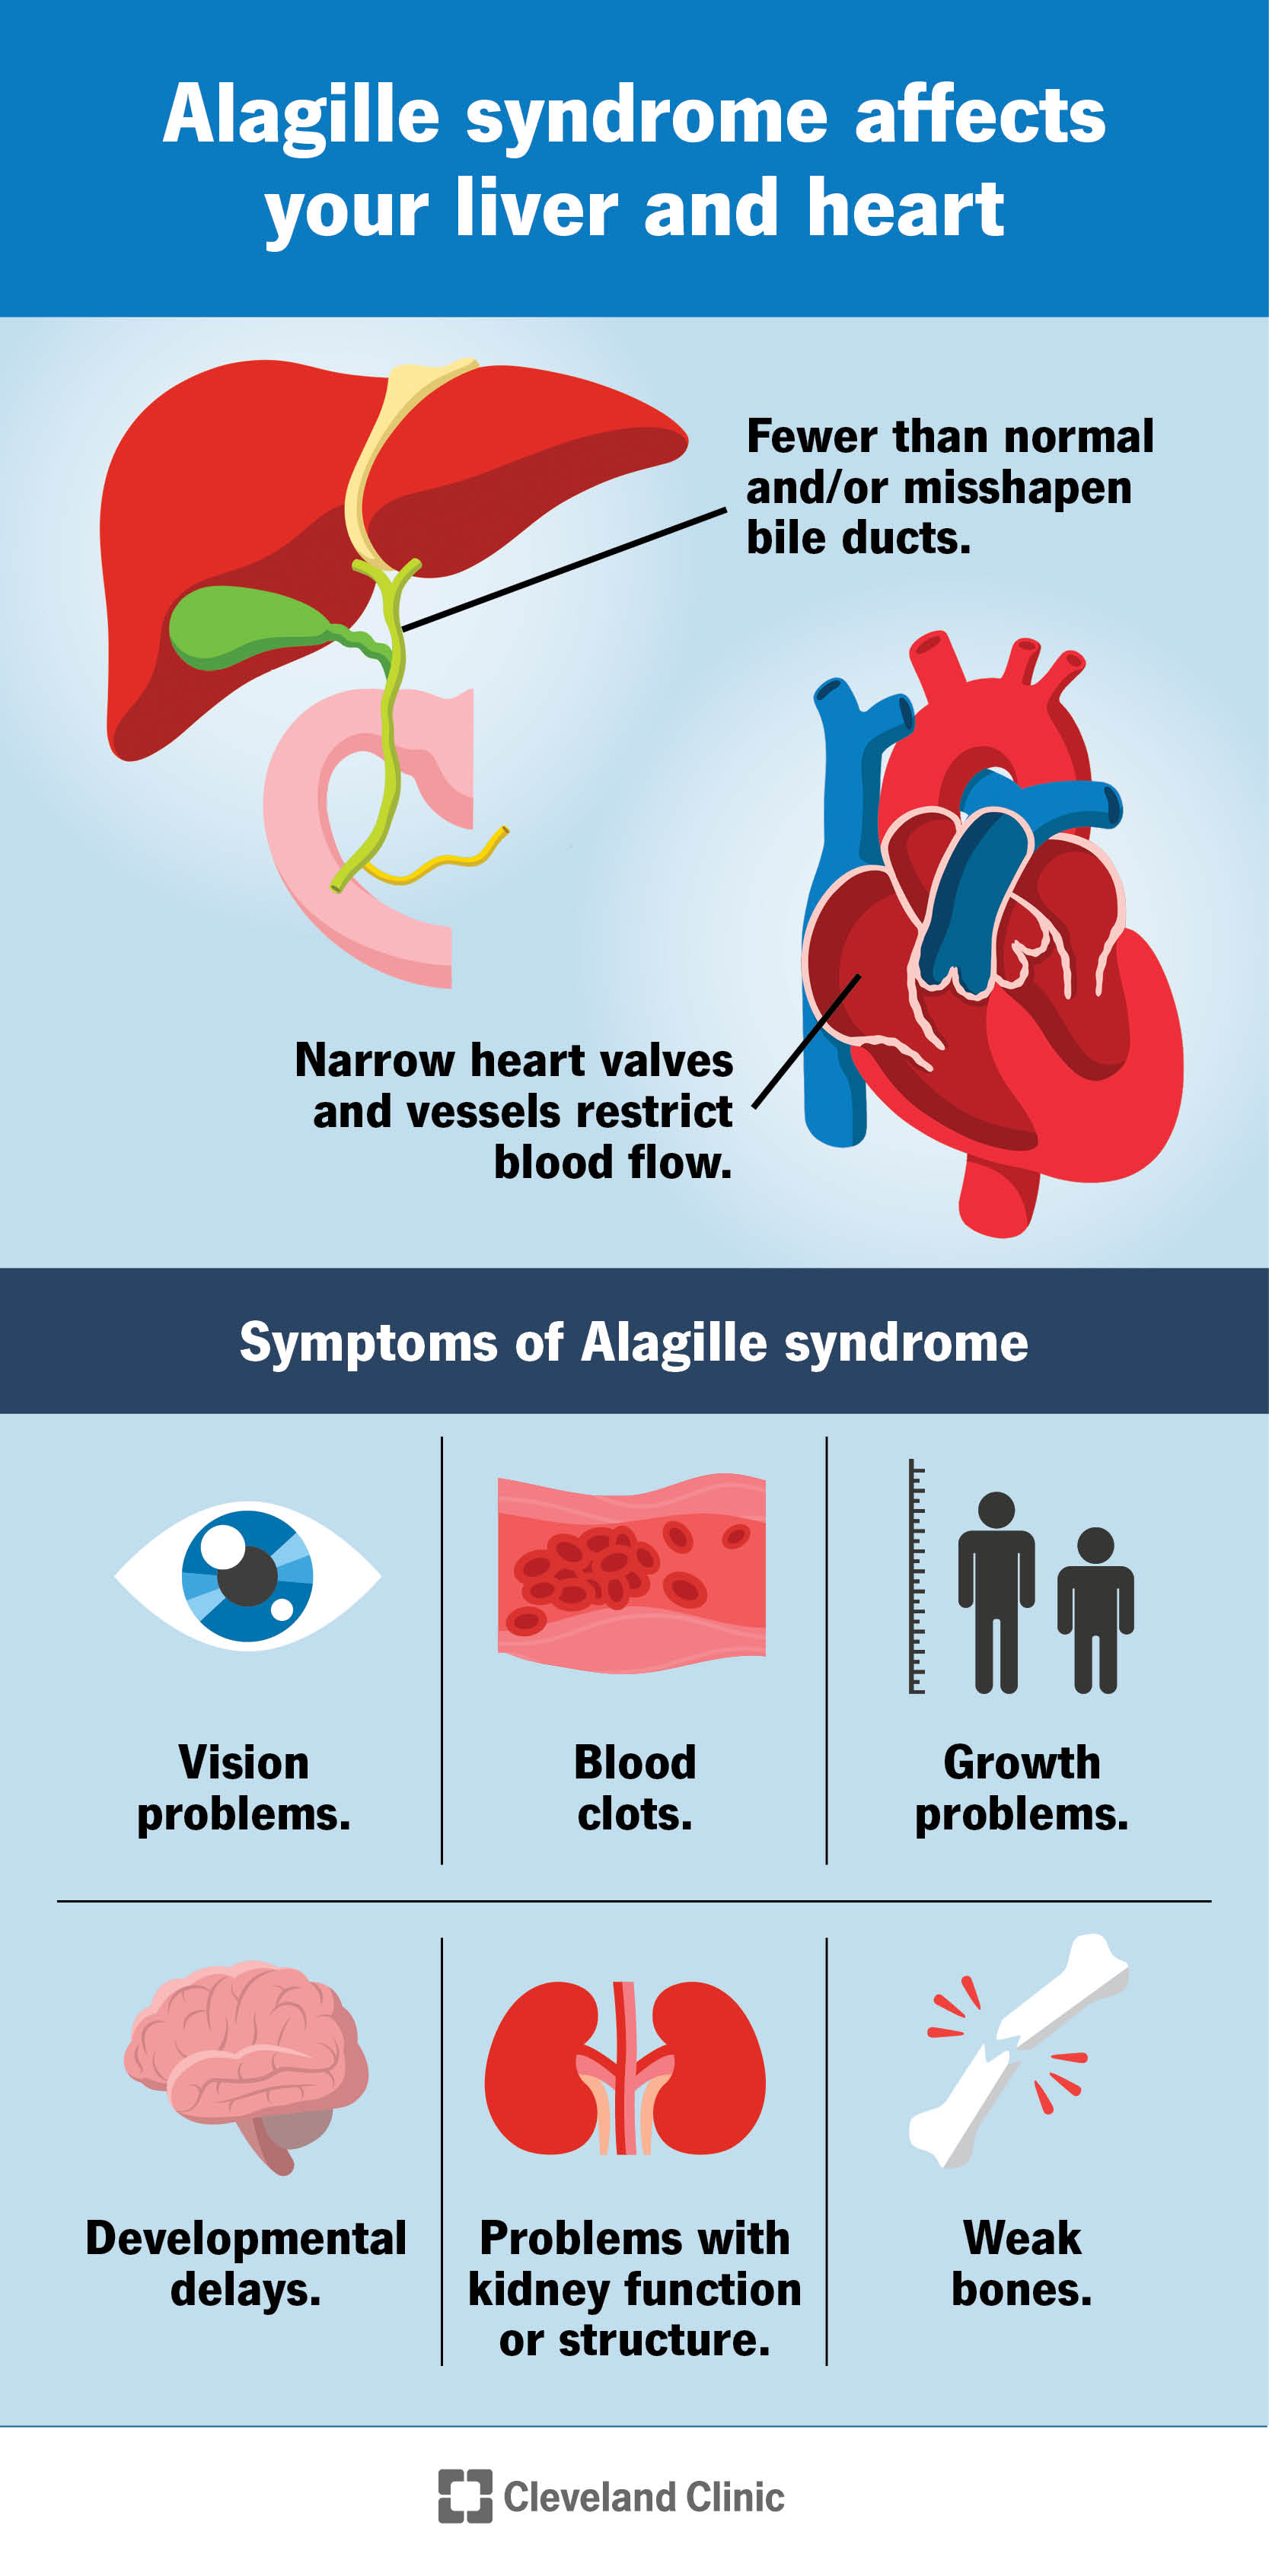 Alagille sindromas paveikia jūsų širdį ir kepenis ir sukelia kitus simptomus visame kūne.